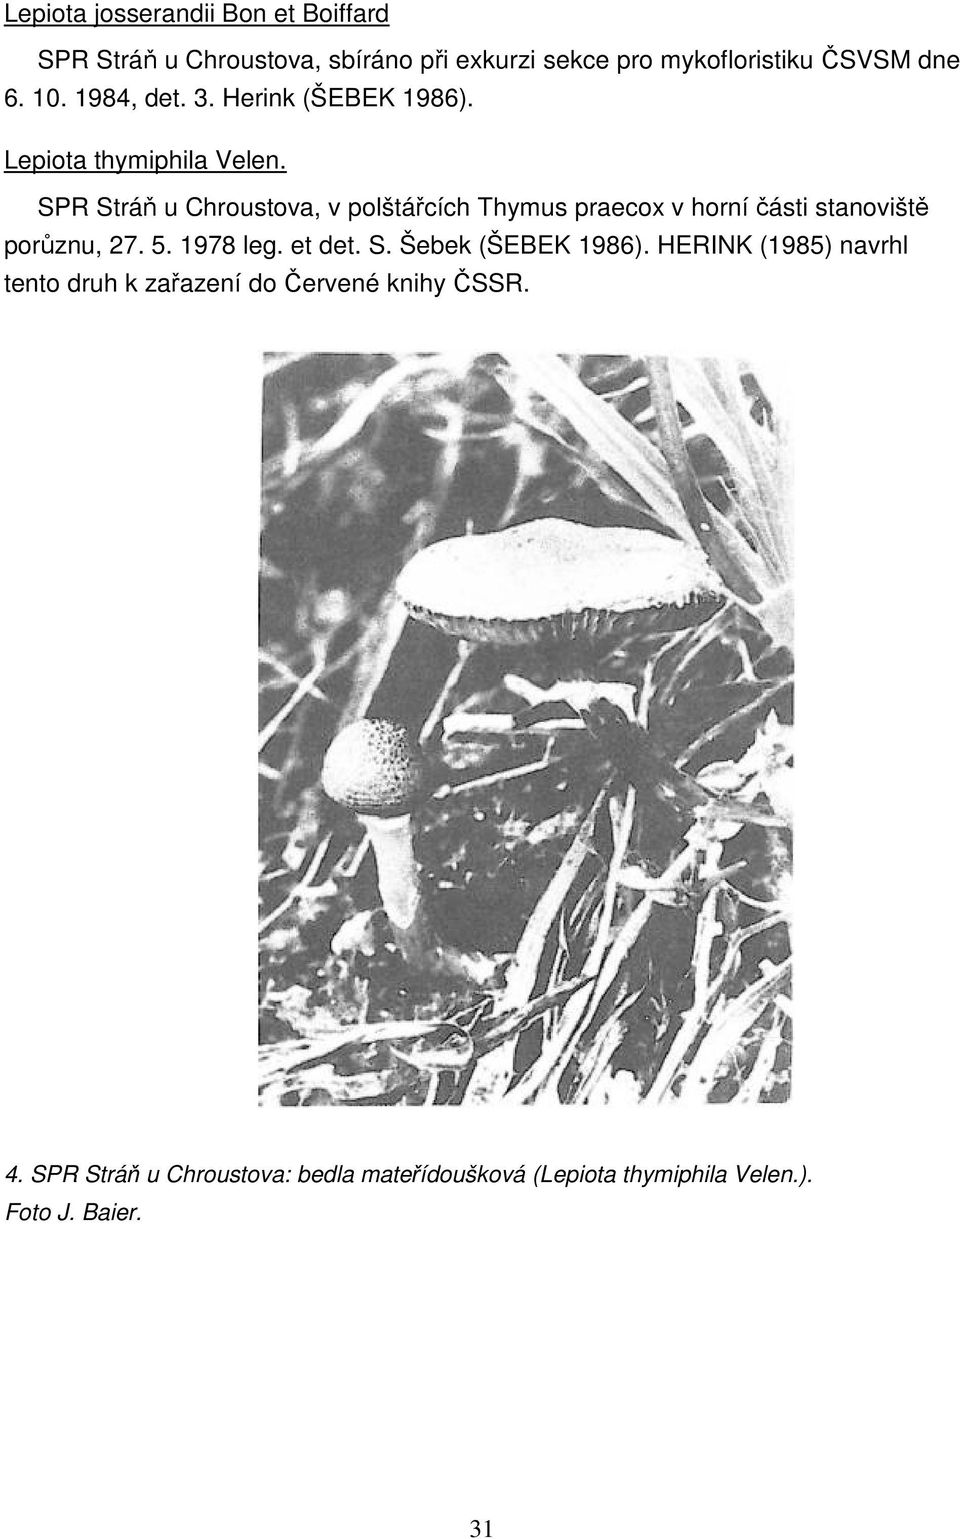 SPR Stráň u Chroustova, v polštářcích Thymus praecox v horní části stanoviště porůznu, 27. 5. 1978 leg. et det. S. Šebek (ŠEBEK 1986).